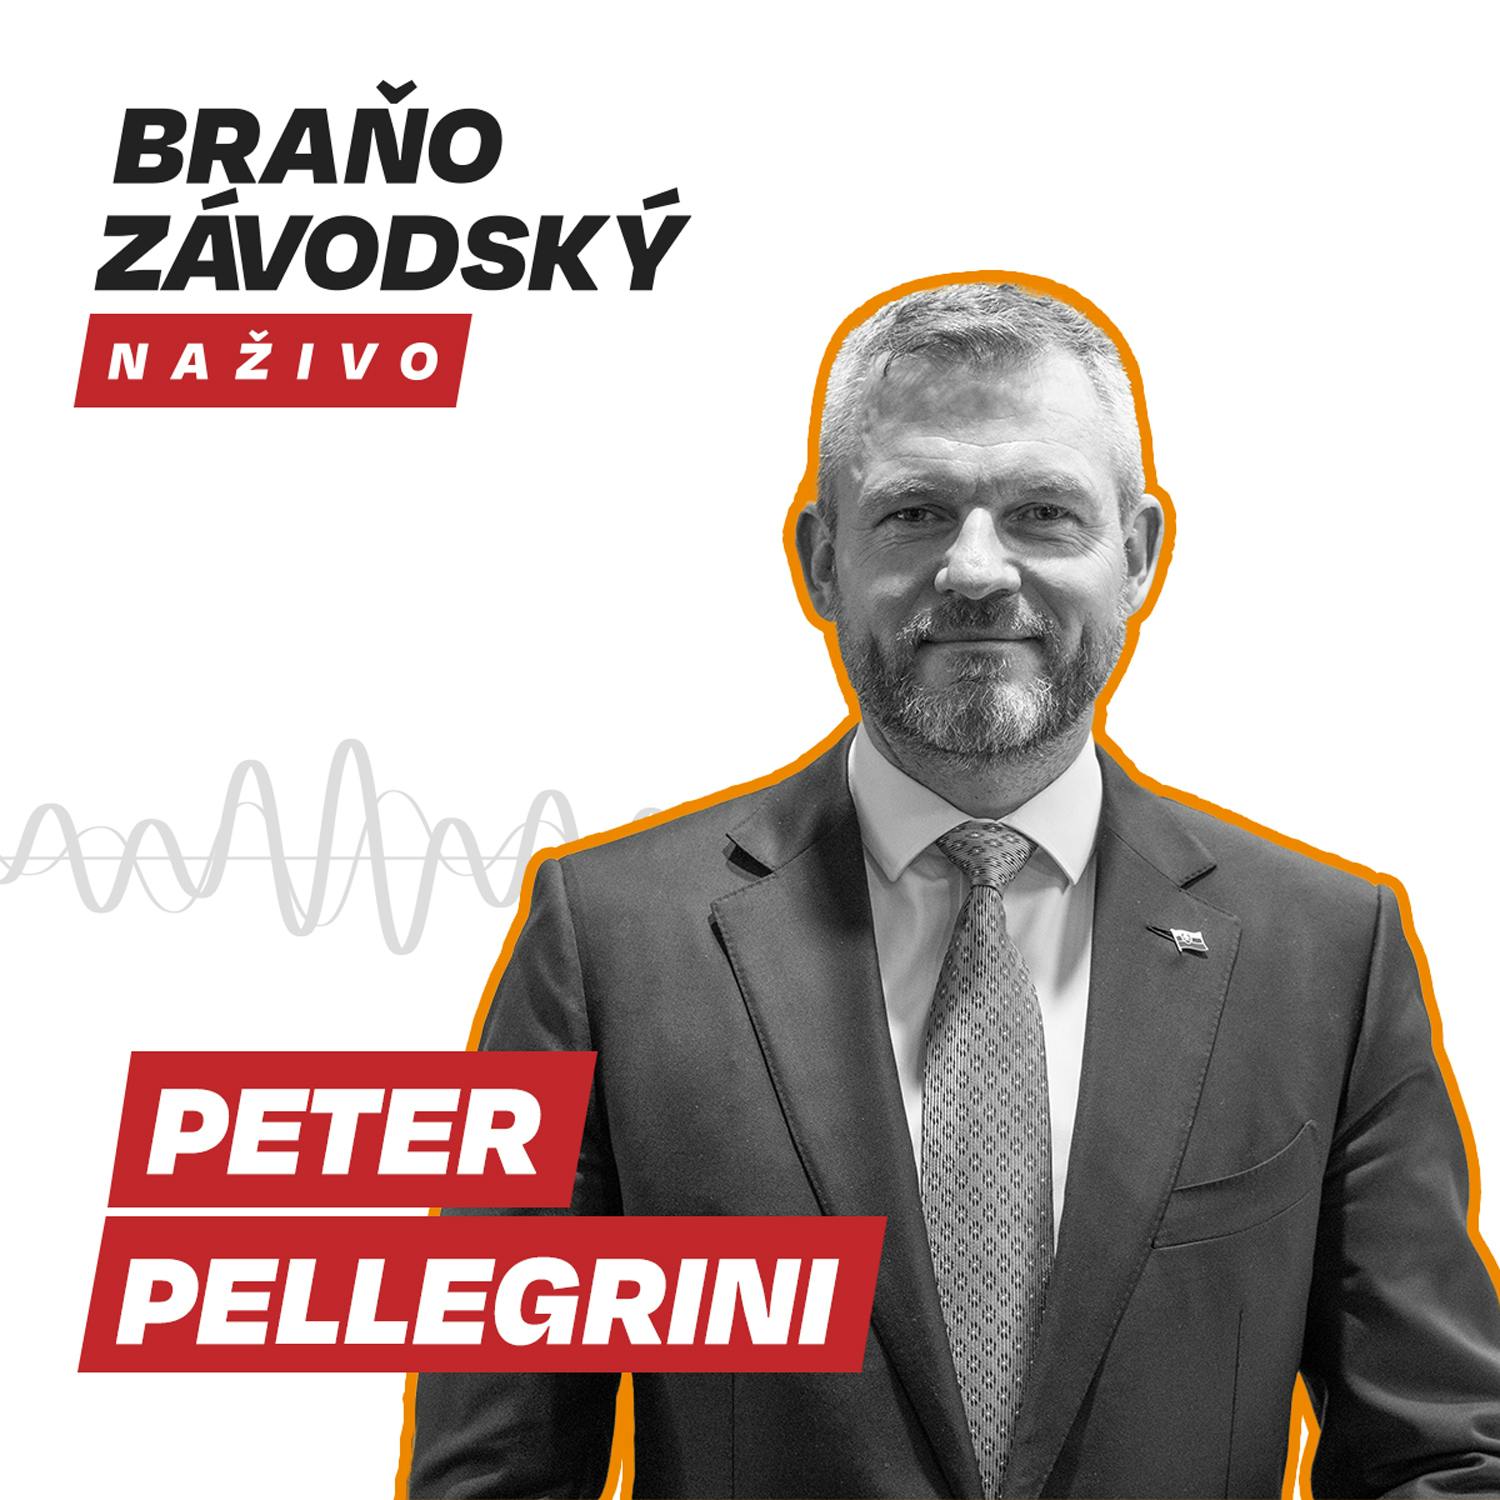 Pellegrini vyzýva vládu, aby popri pomoci Ukrajine, nezabúdala na slovenských občanov